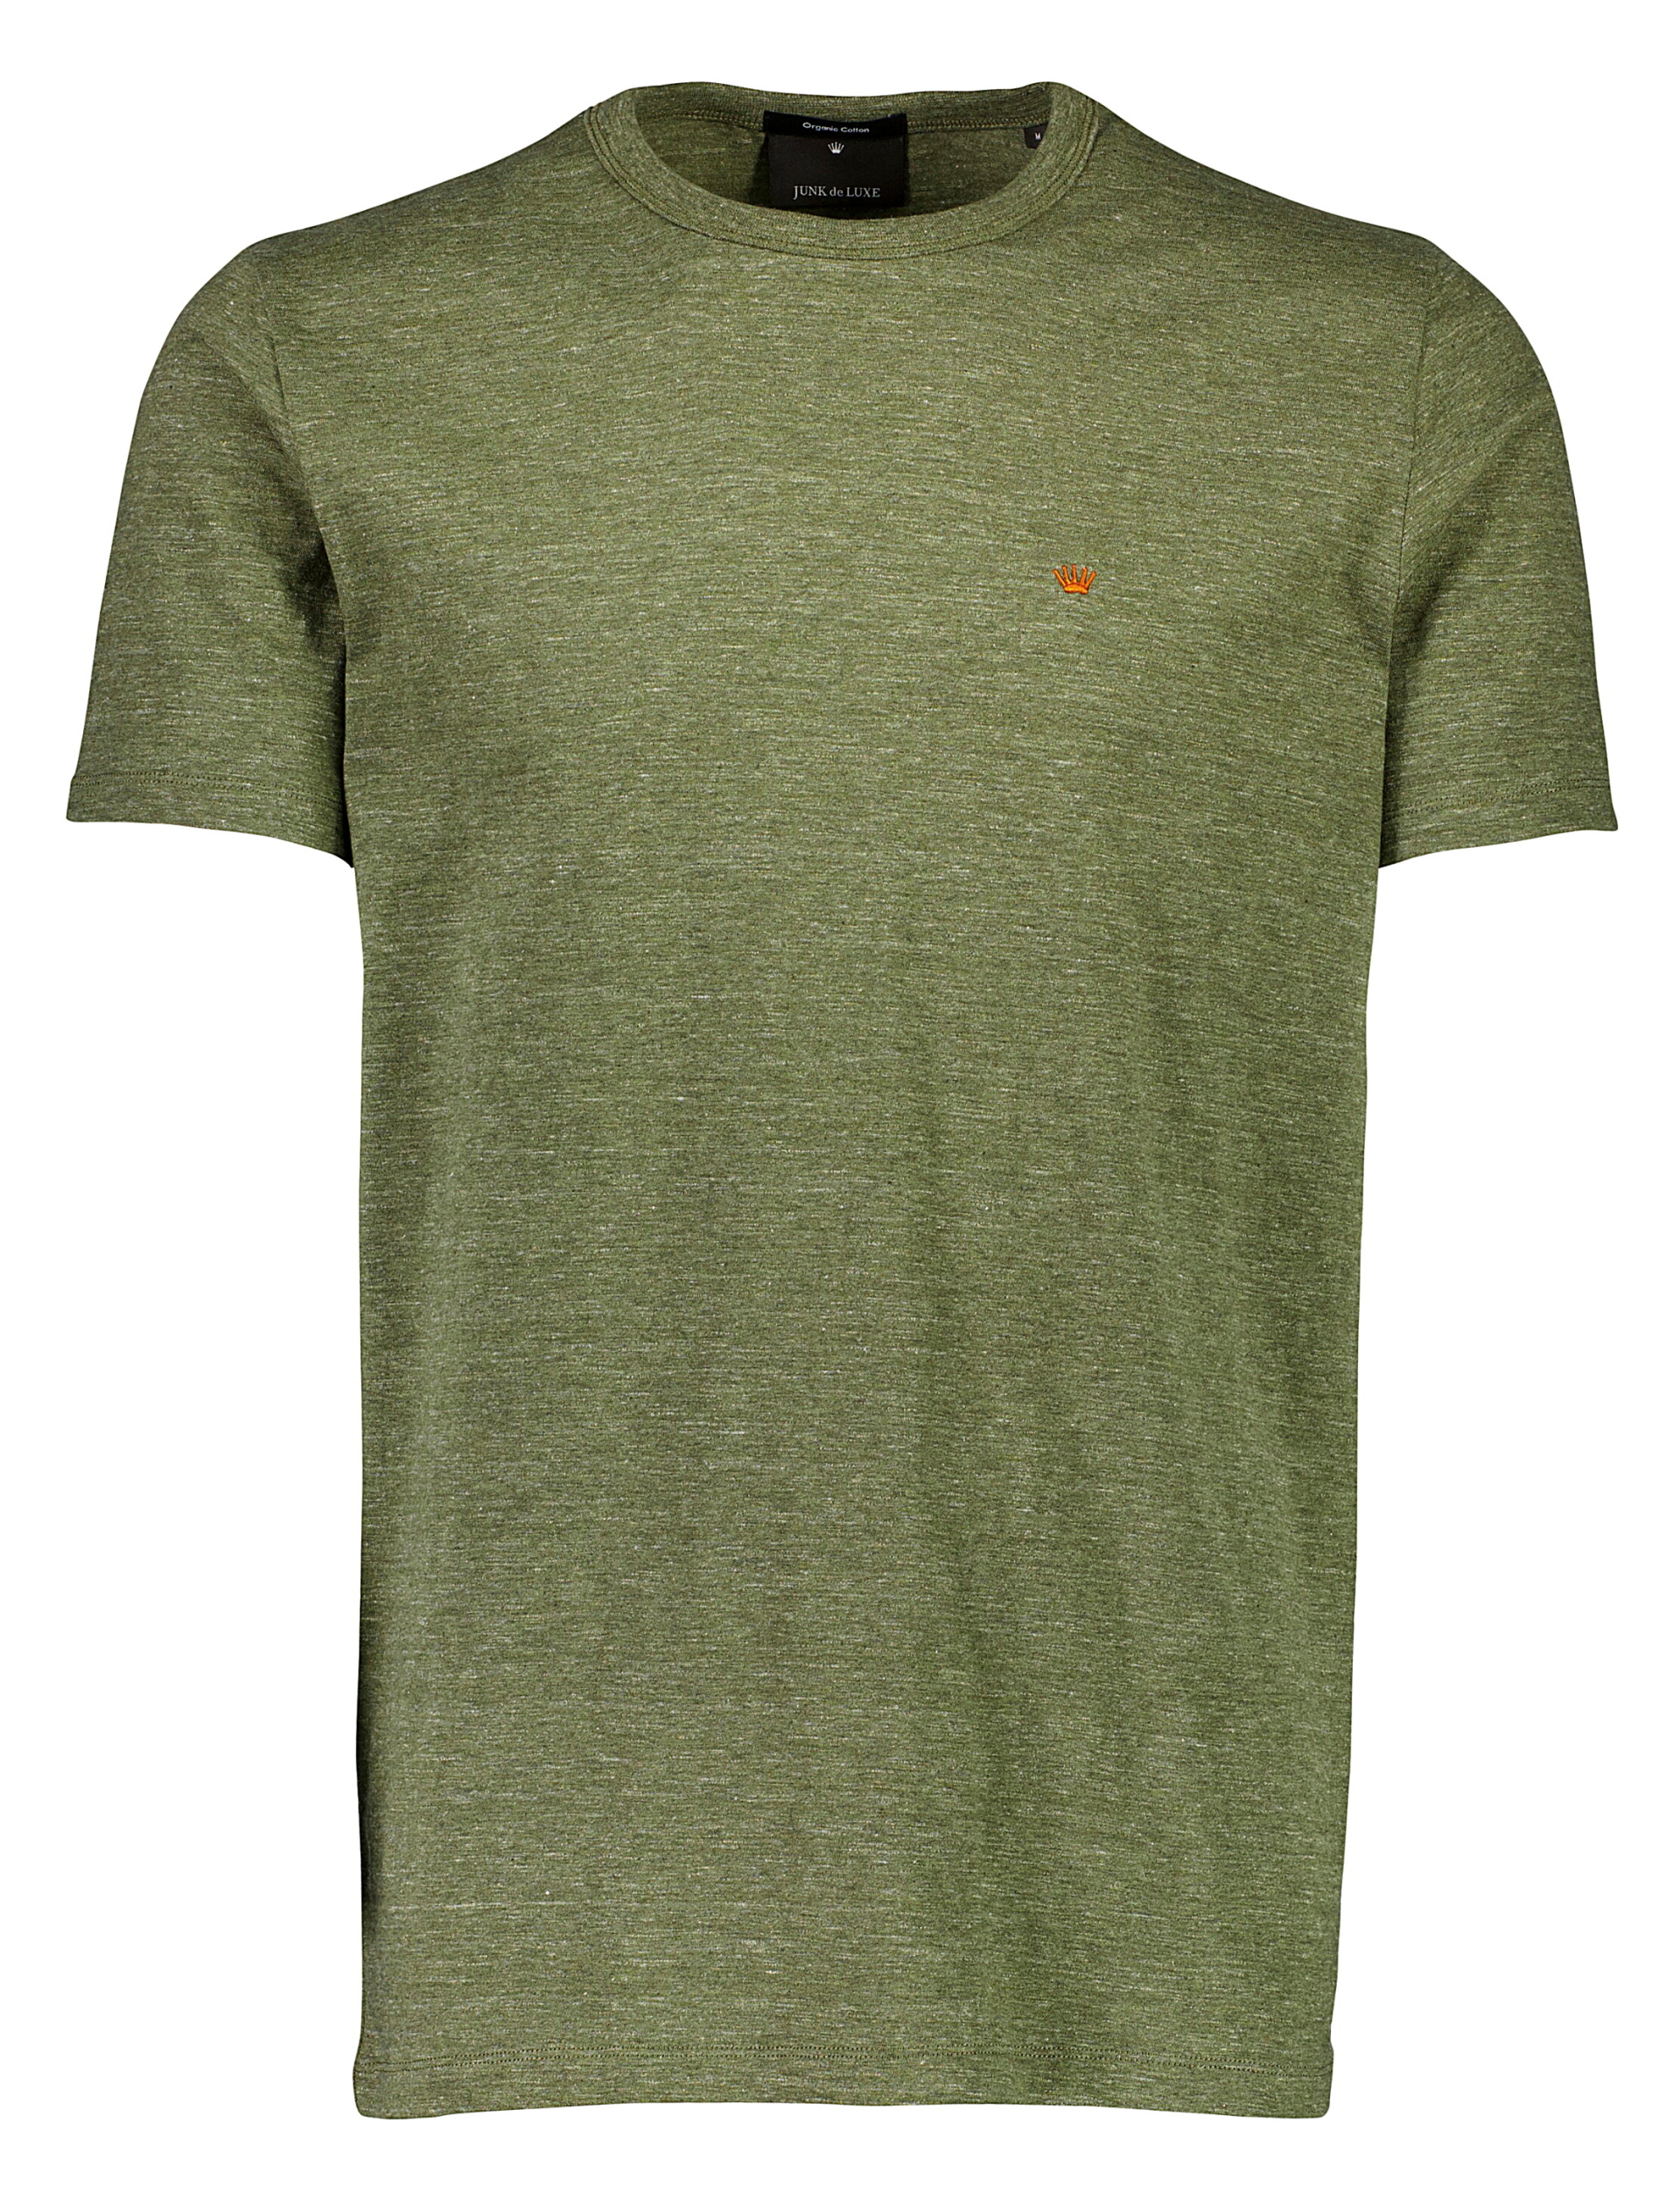 Junk de Luxe T-shirt grön / army mel